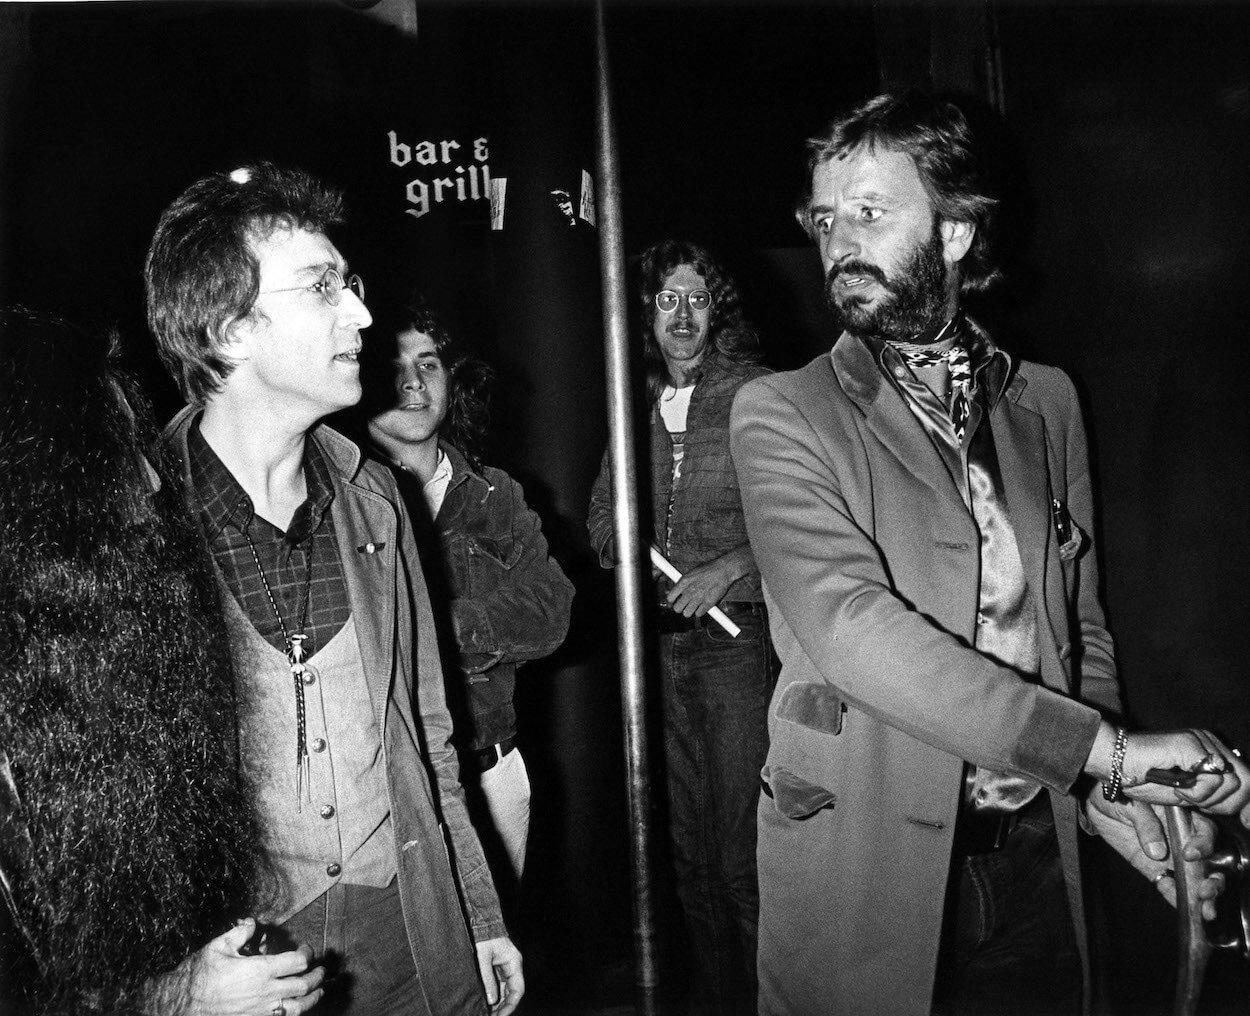 John Lennon (left) walks alongside Ringo Starr arrive at a Los Angeles club in 1975.